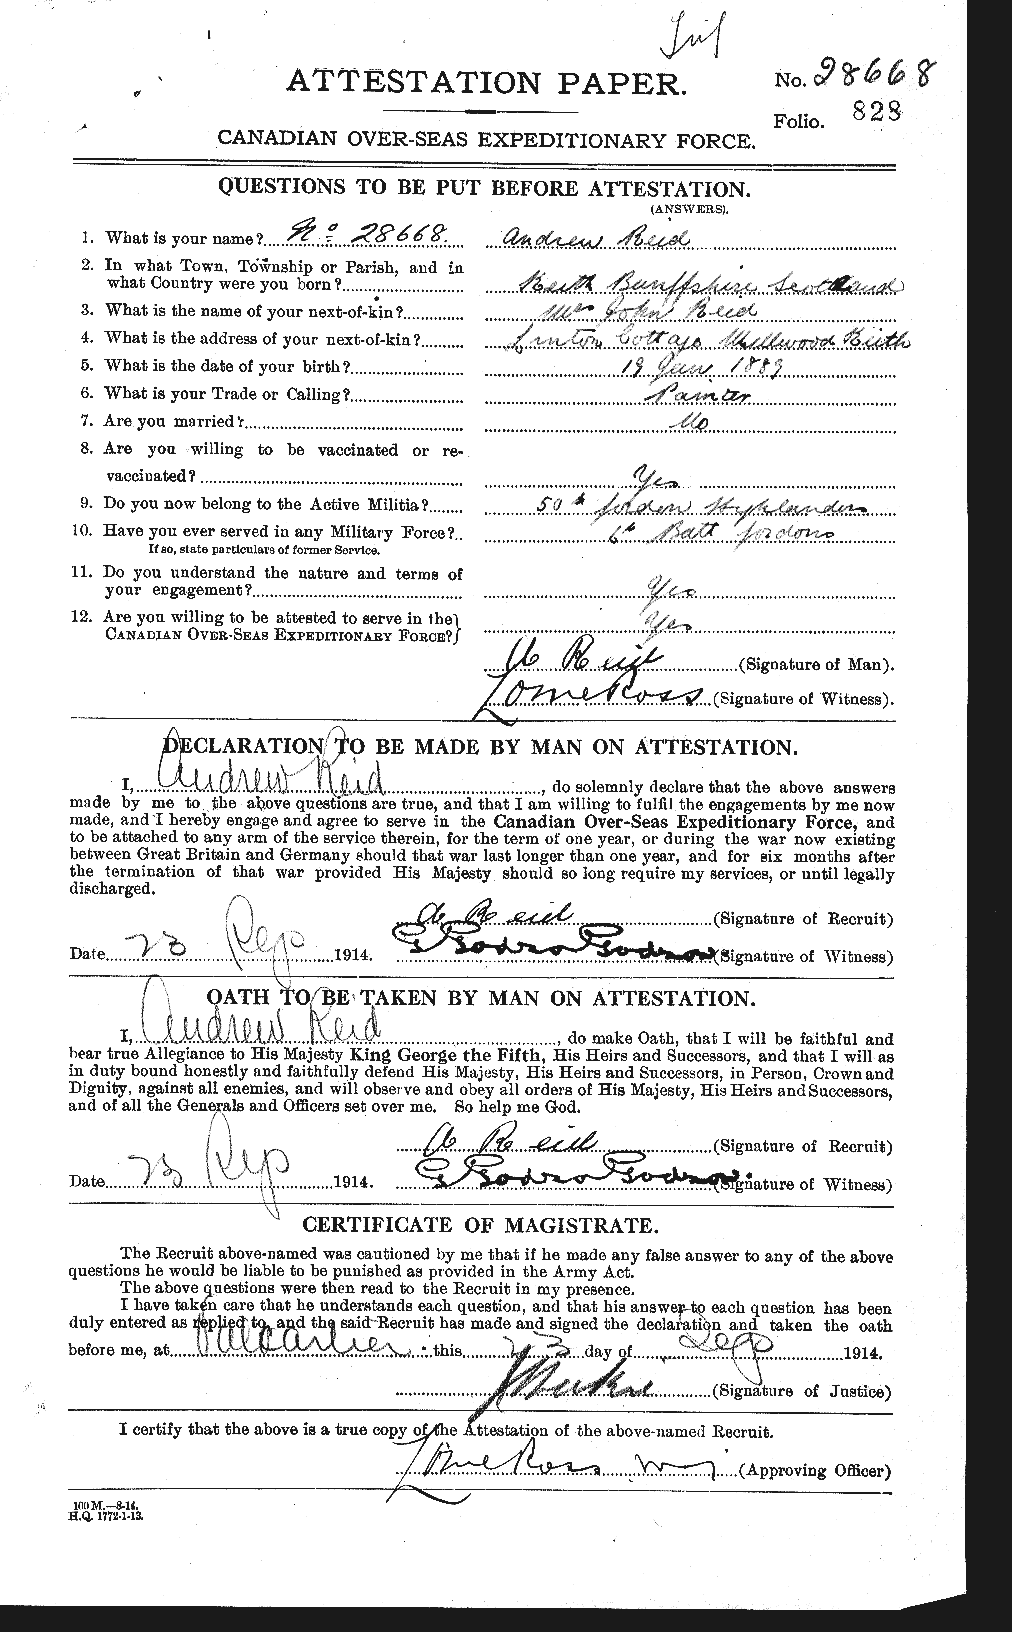 Dossiers du Personnel de la Première Guerre mondiale - CEC 597819a